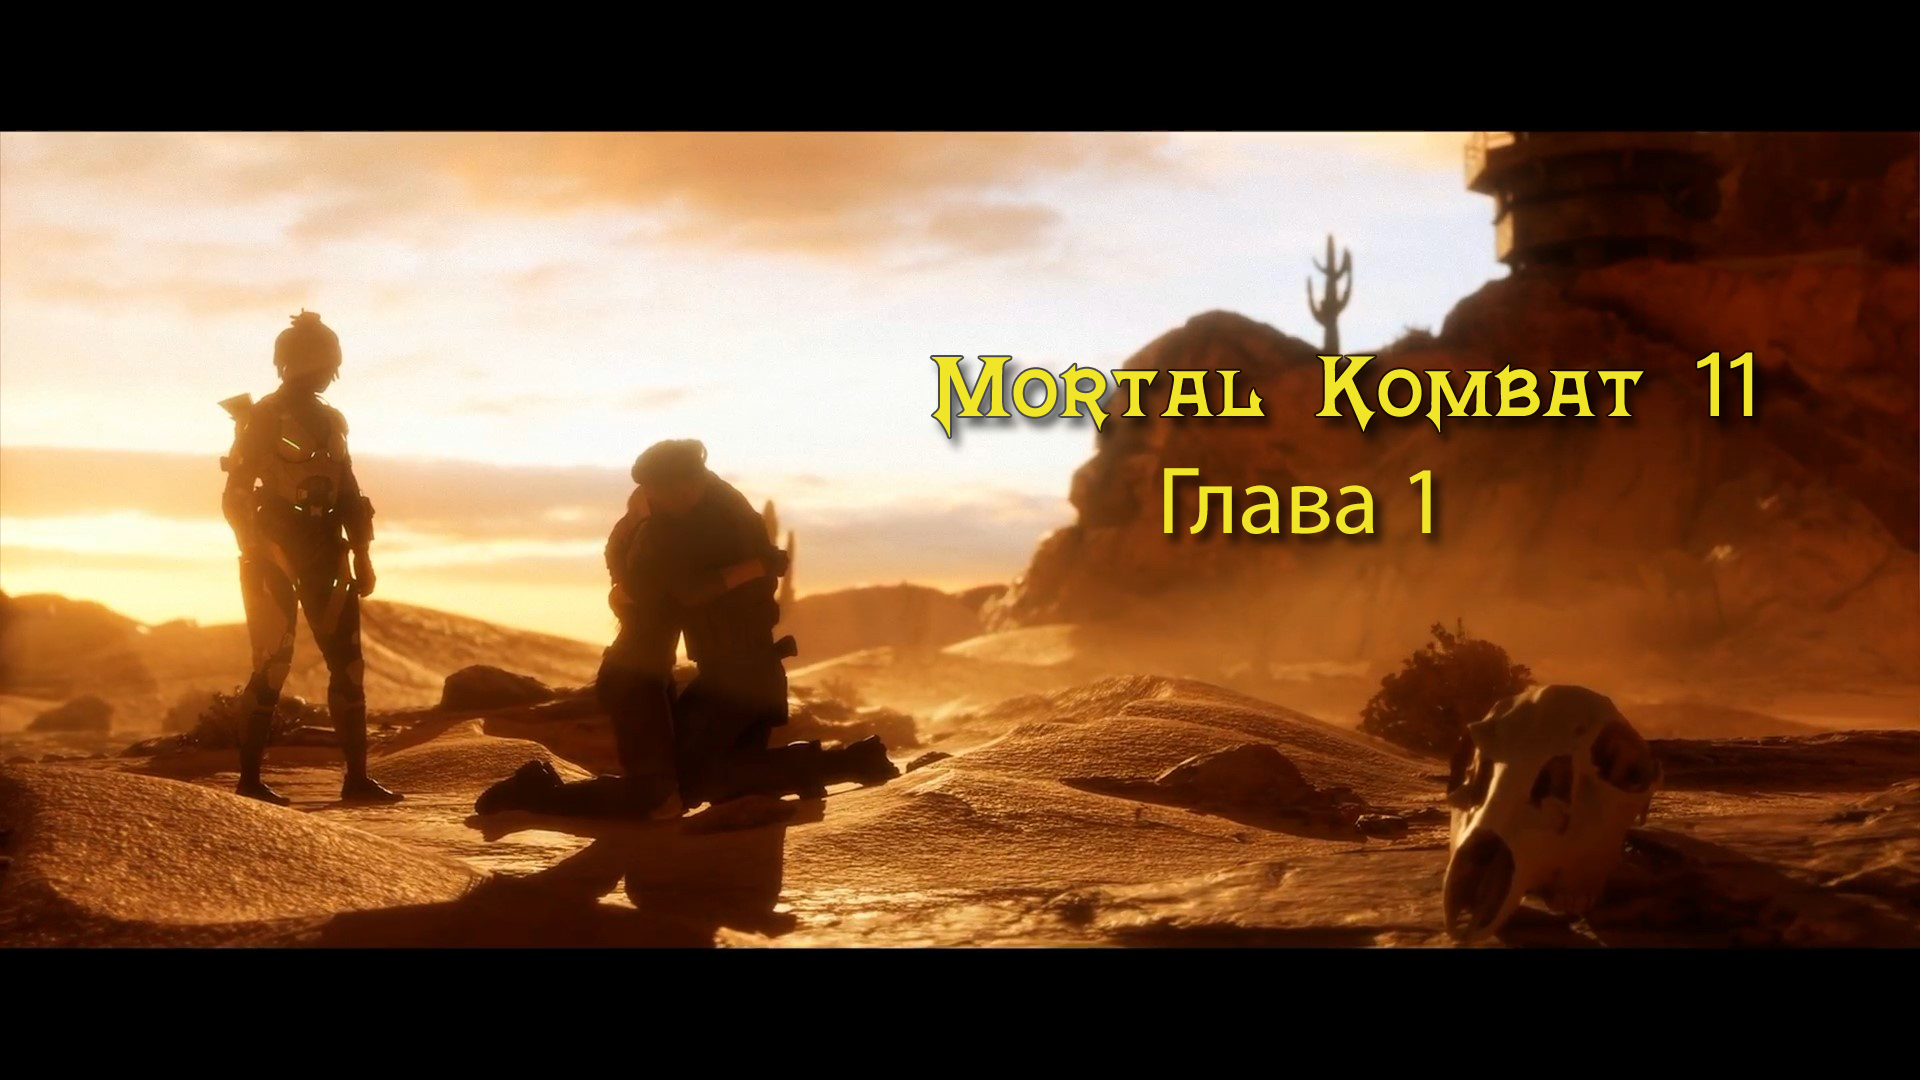 Mortal Kombat 11 Aftermath / Ultimate  - Прохождение - Глава 1: Ближайший родственник (Сюжет)